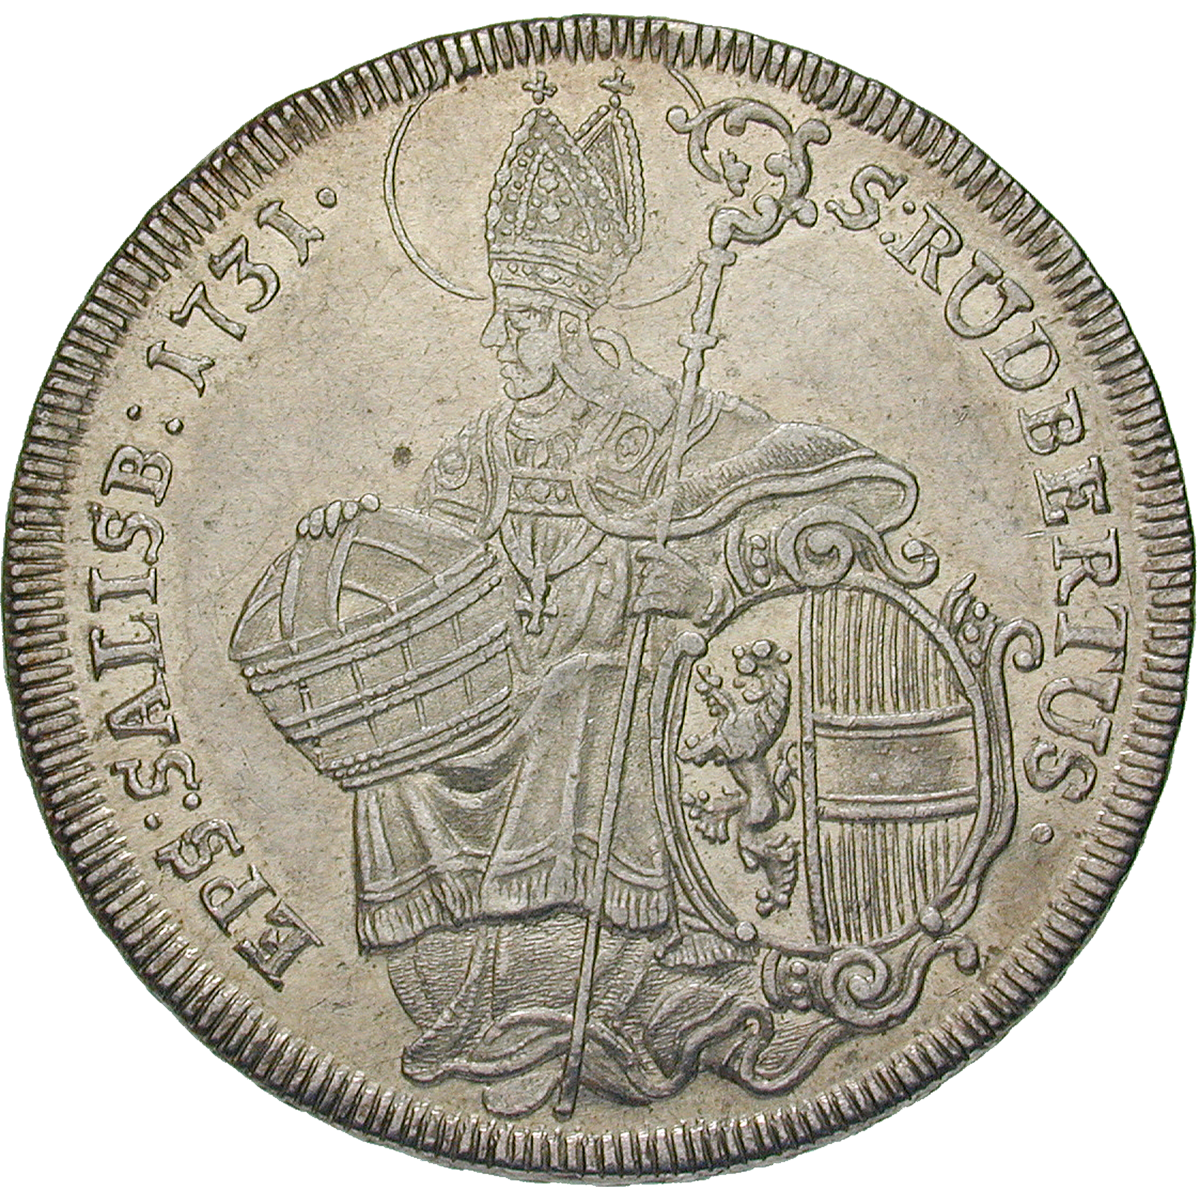 Heiliges Römisches Reich, Fürstbistum Salzburg, Leopold Anton Eleutherius von Firmian, Taler 1731 (reverse)